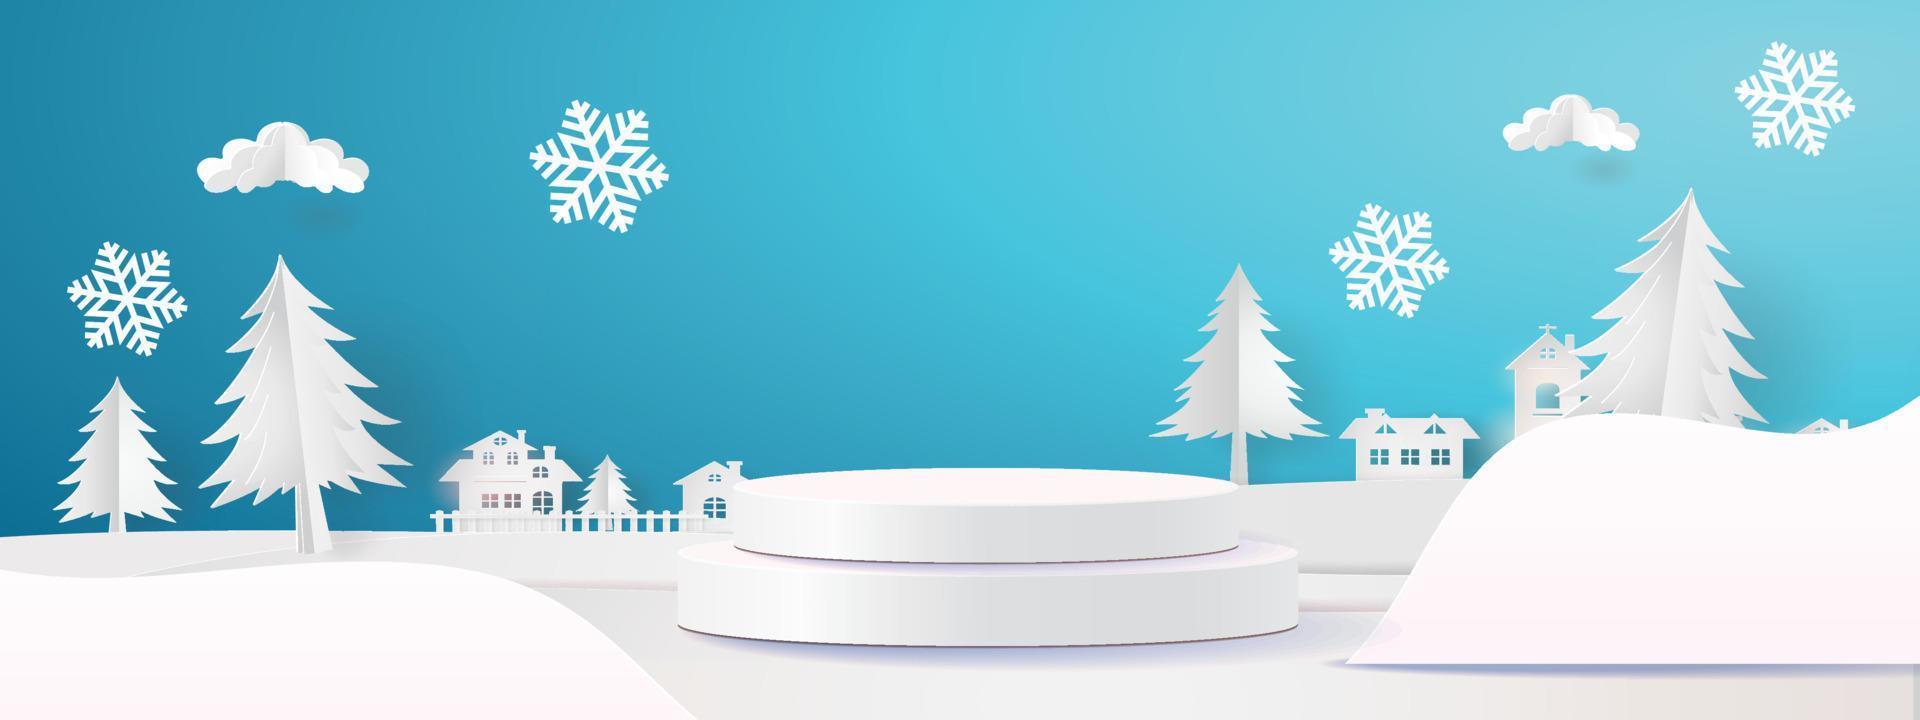 weihnachten winter produkt podium schneeflocken und schnee vektor illustration verkauf produkt banner bewaldete landschaft papier 3d